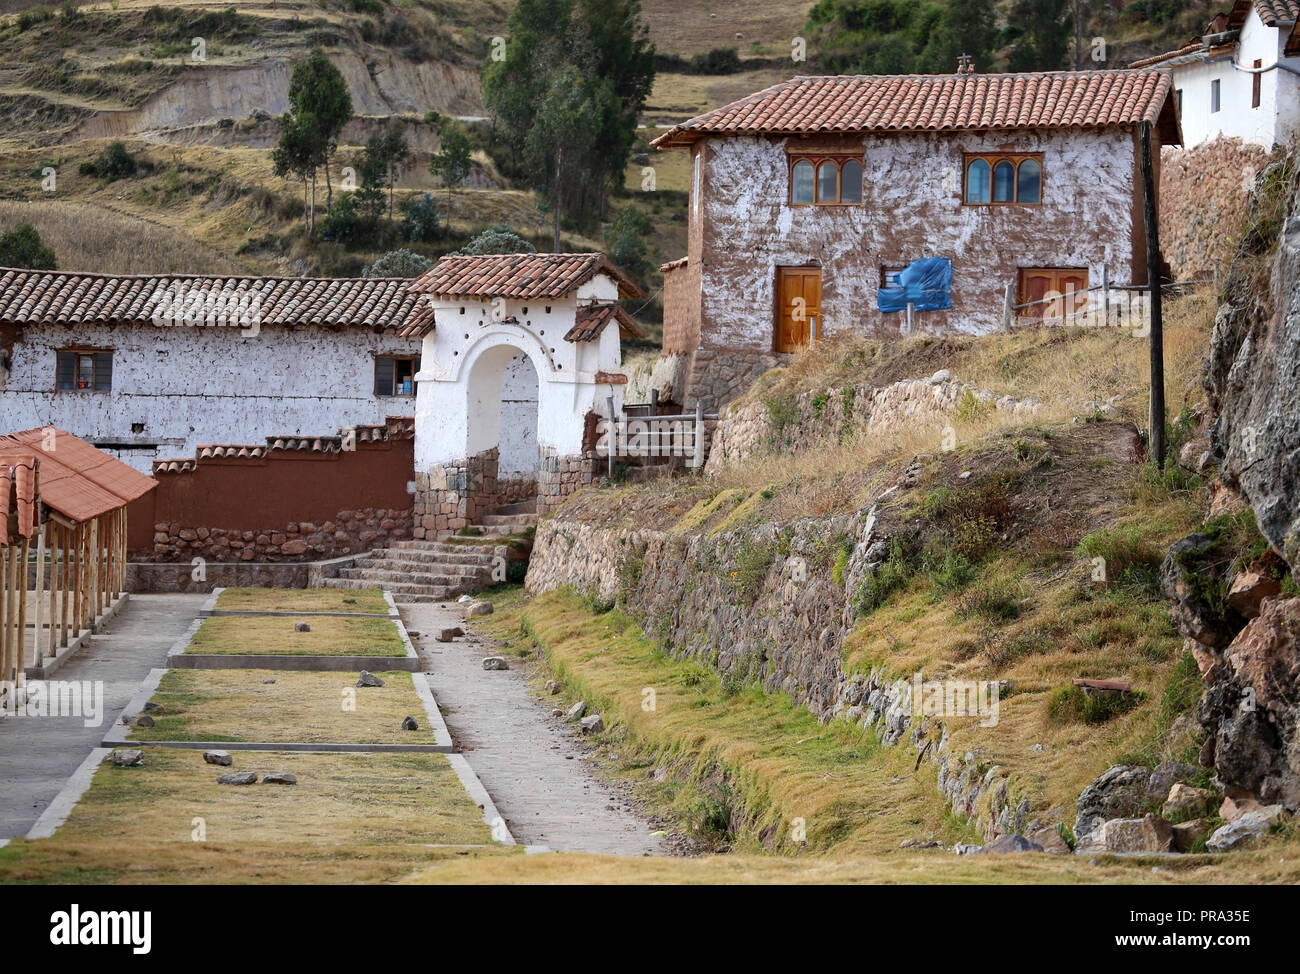 La scena del villaggio con muri in pietra e porte ad arco, tile case dal tetto ed erba Foto Stock